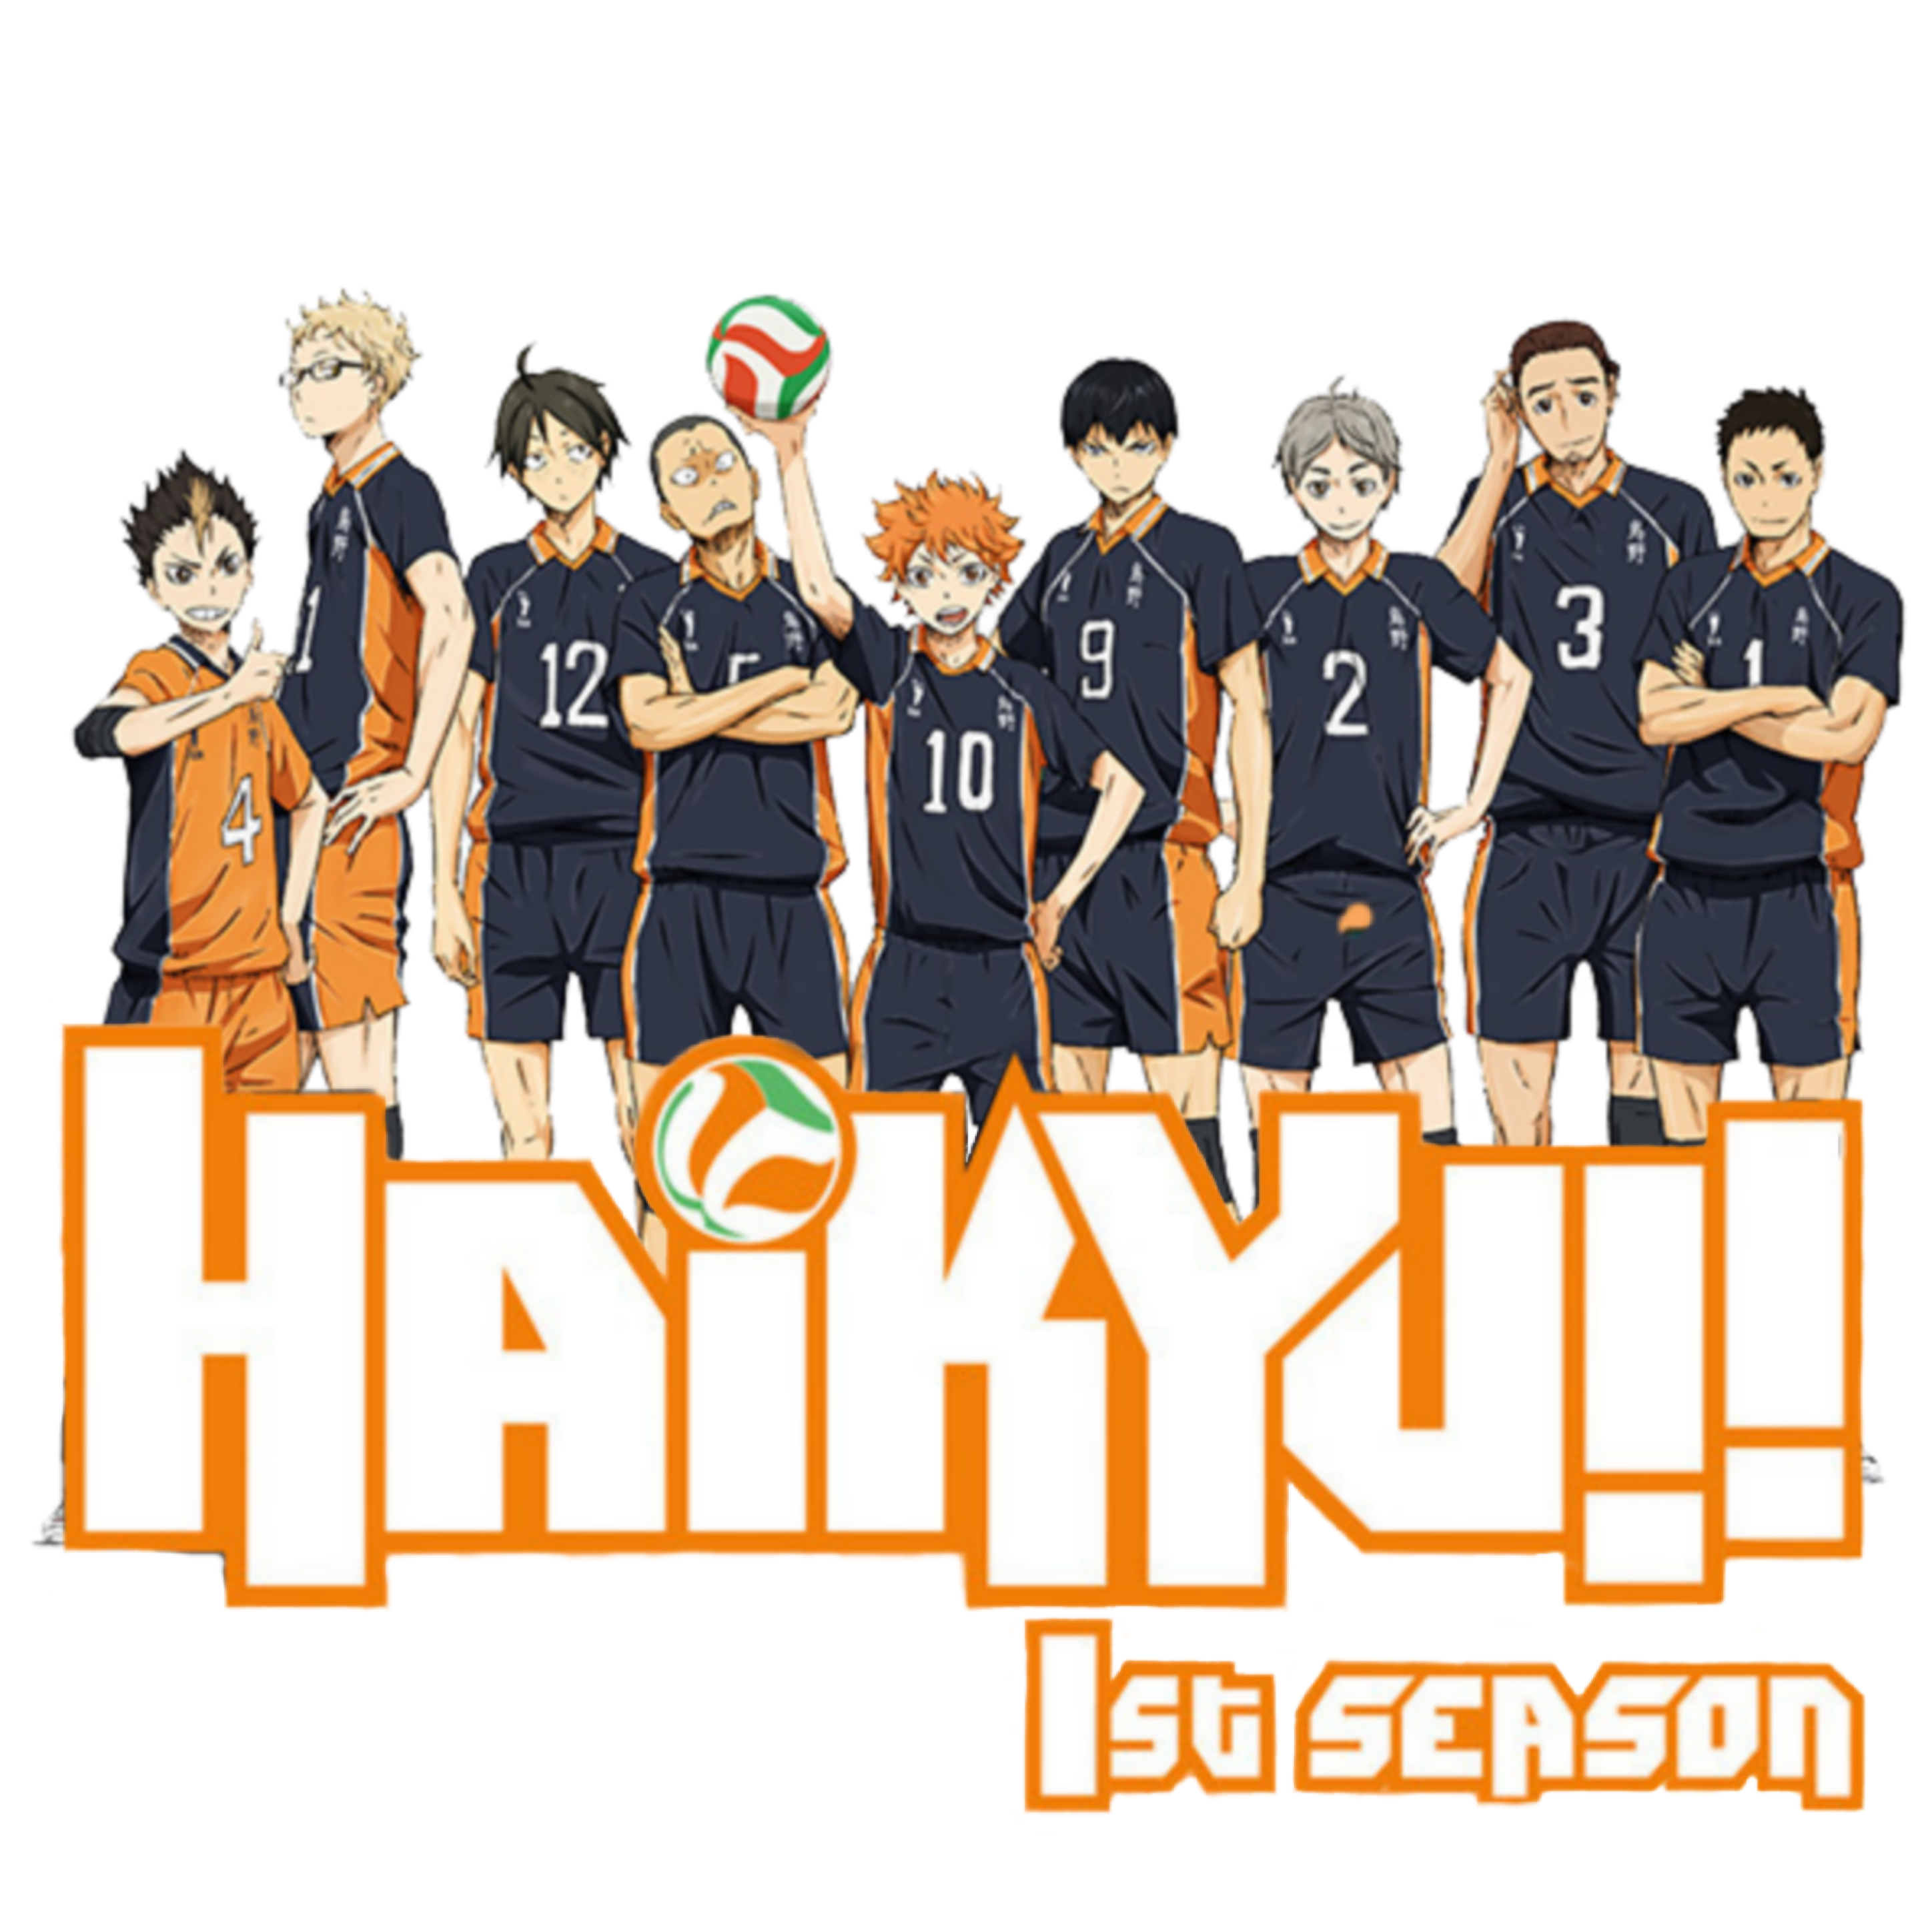 Haikyuu!! - Karasuno Team (face) by VK-for-da-win on DeviantArt